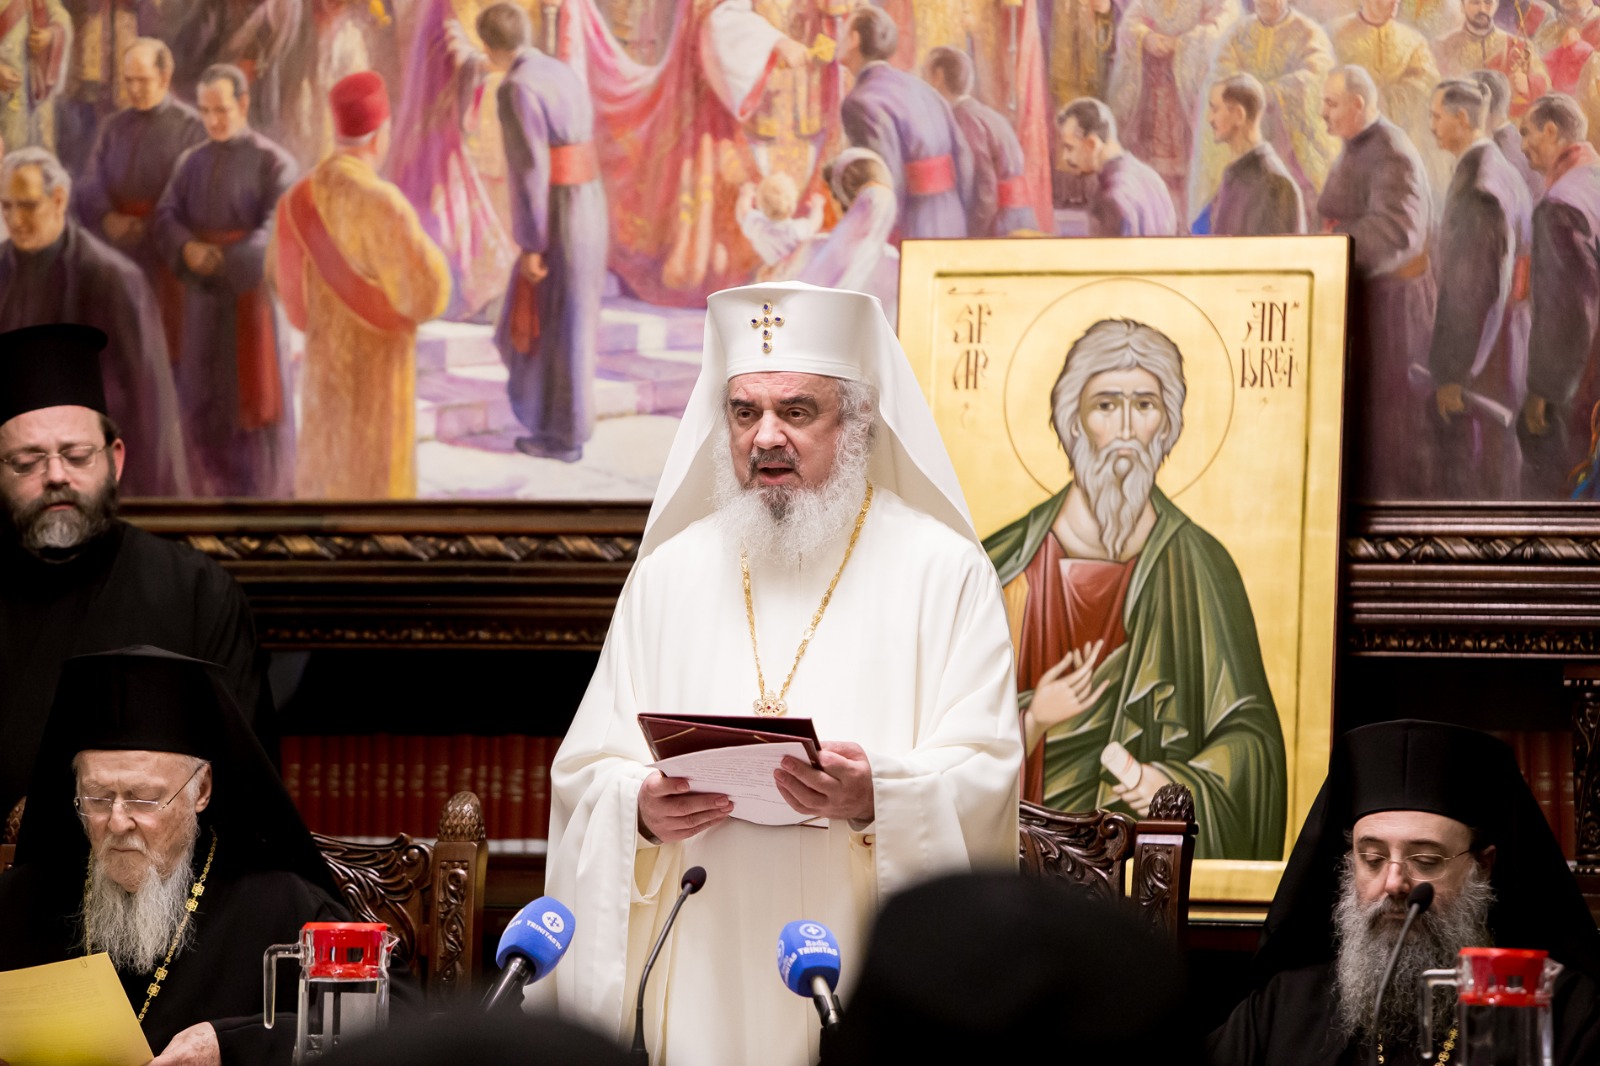 Allocution du patriarche de roumanie daniel adressée au patriarche œcuménique bartholomée à l’occasion de la session solennelle du saint-synode de l’Église orthodoxe roumaine